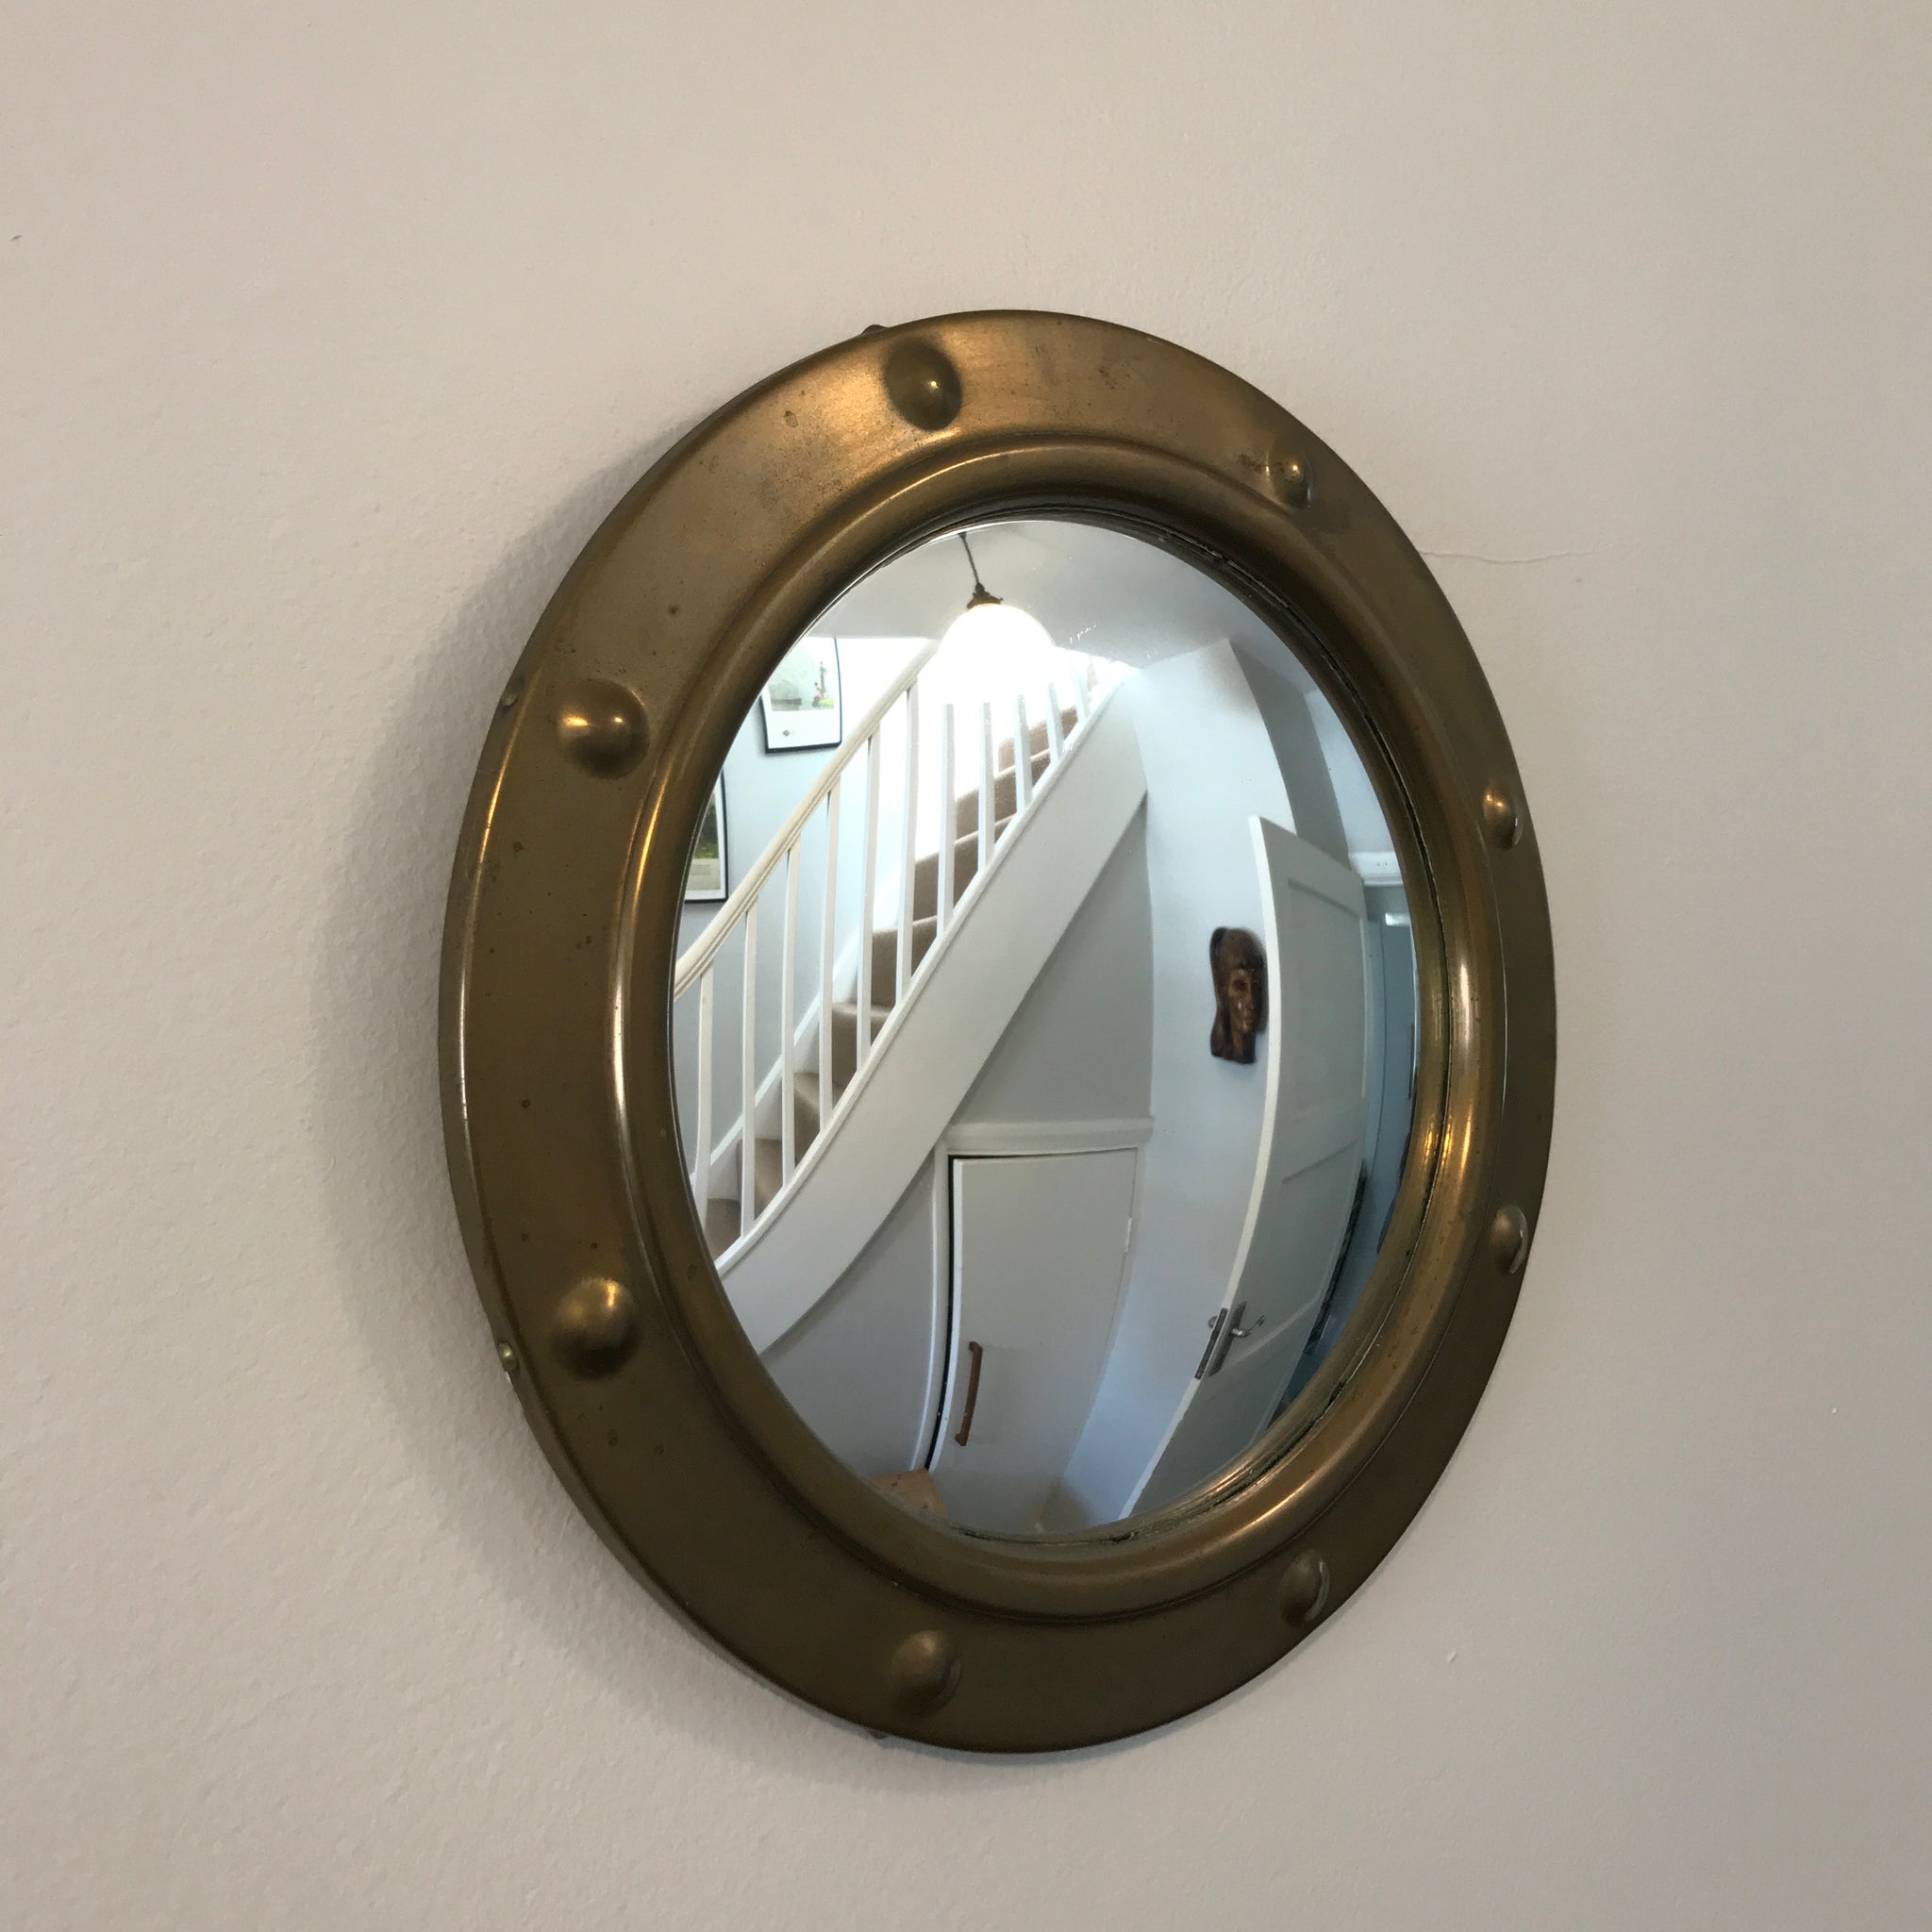 porthole mirror